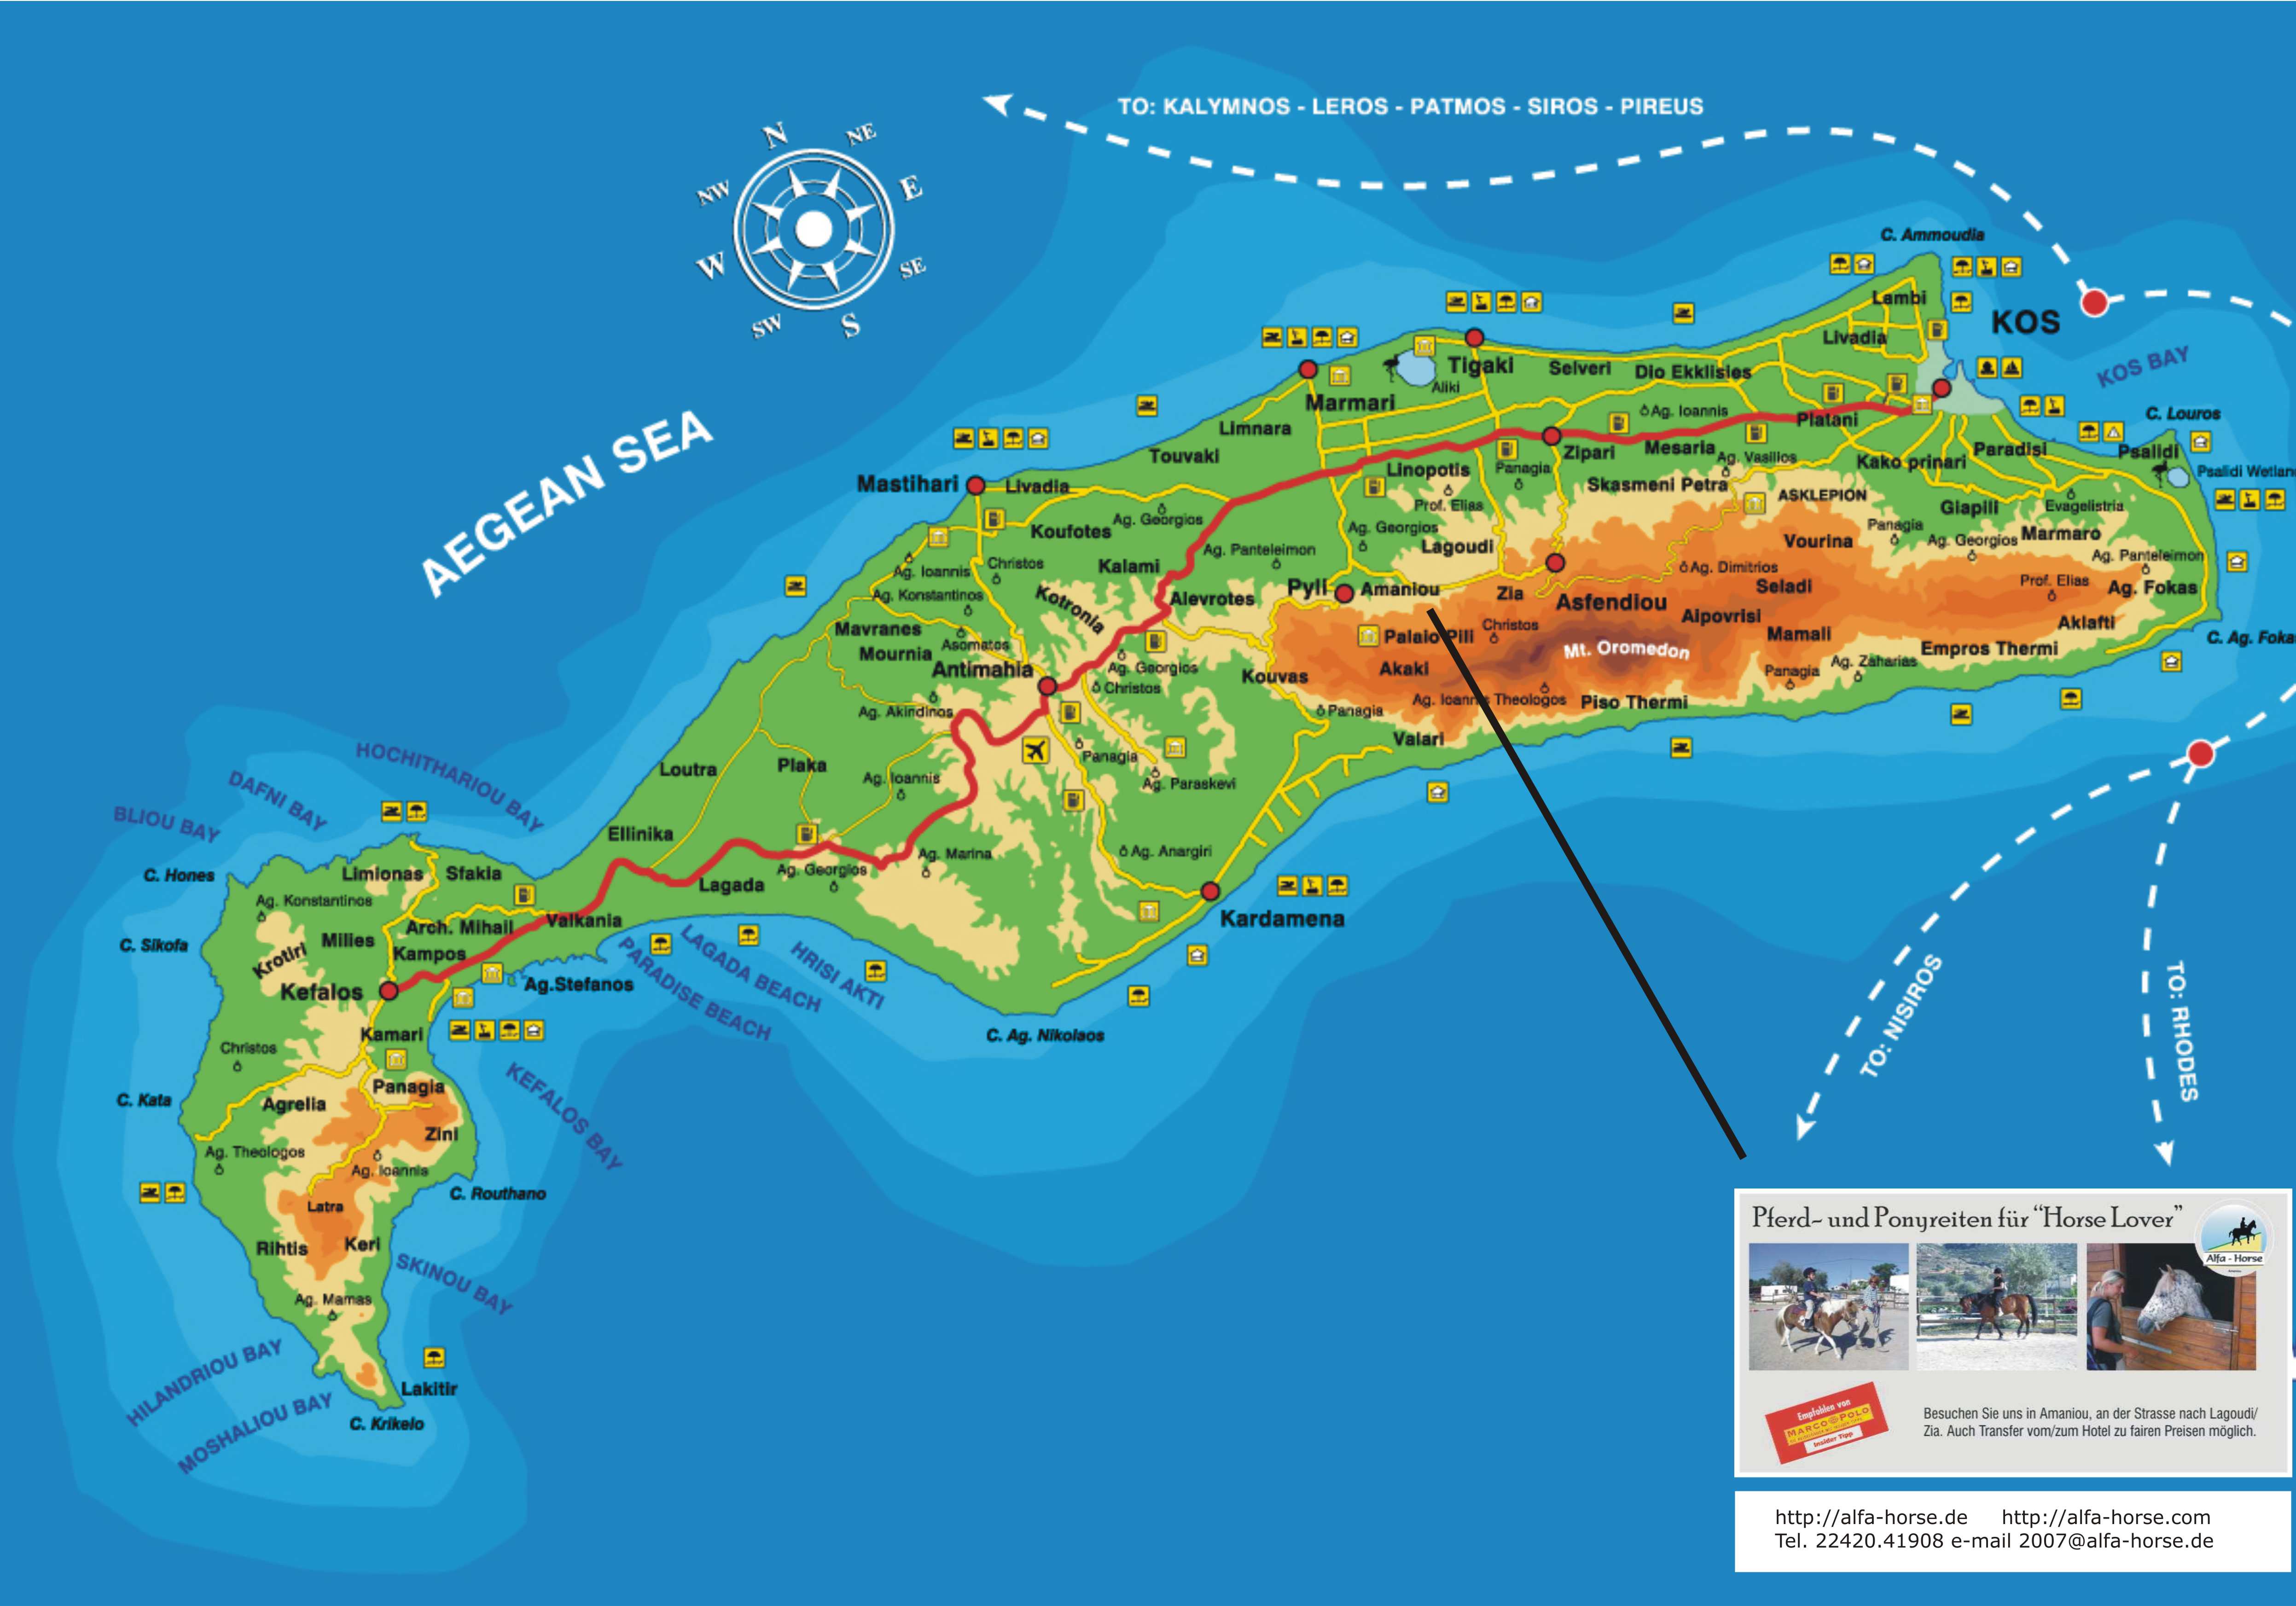 Landkarten und Stadtplan von Kos in Griechenland zum gratis downloaden